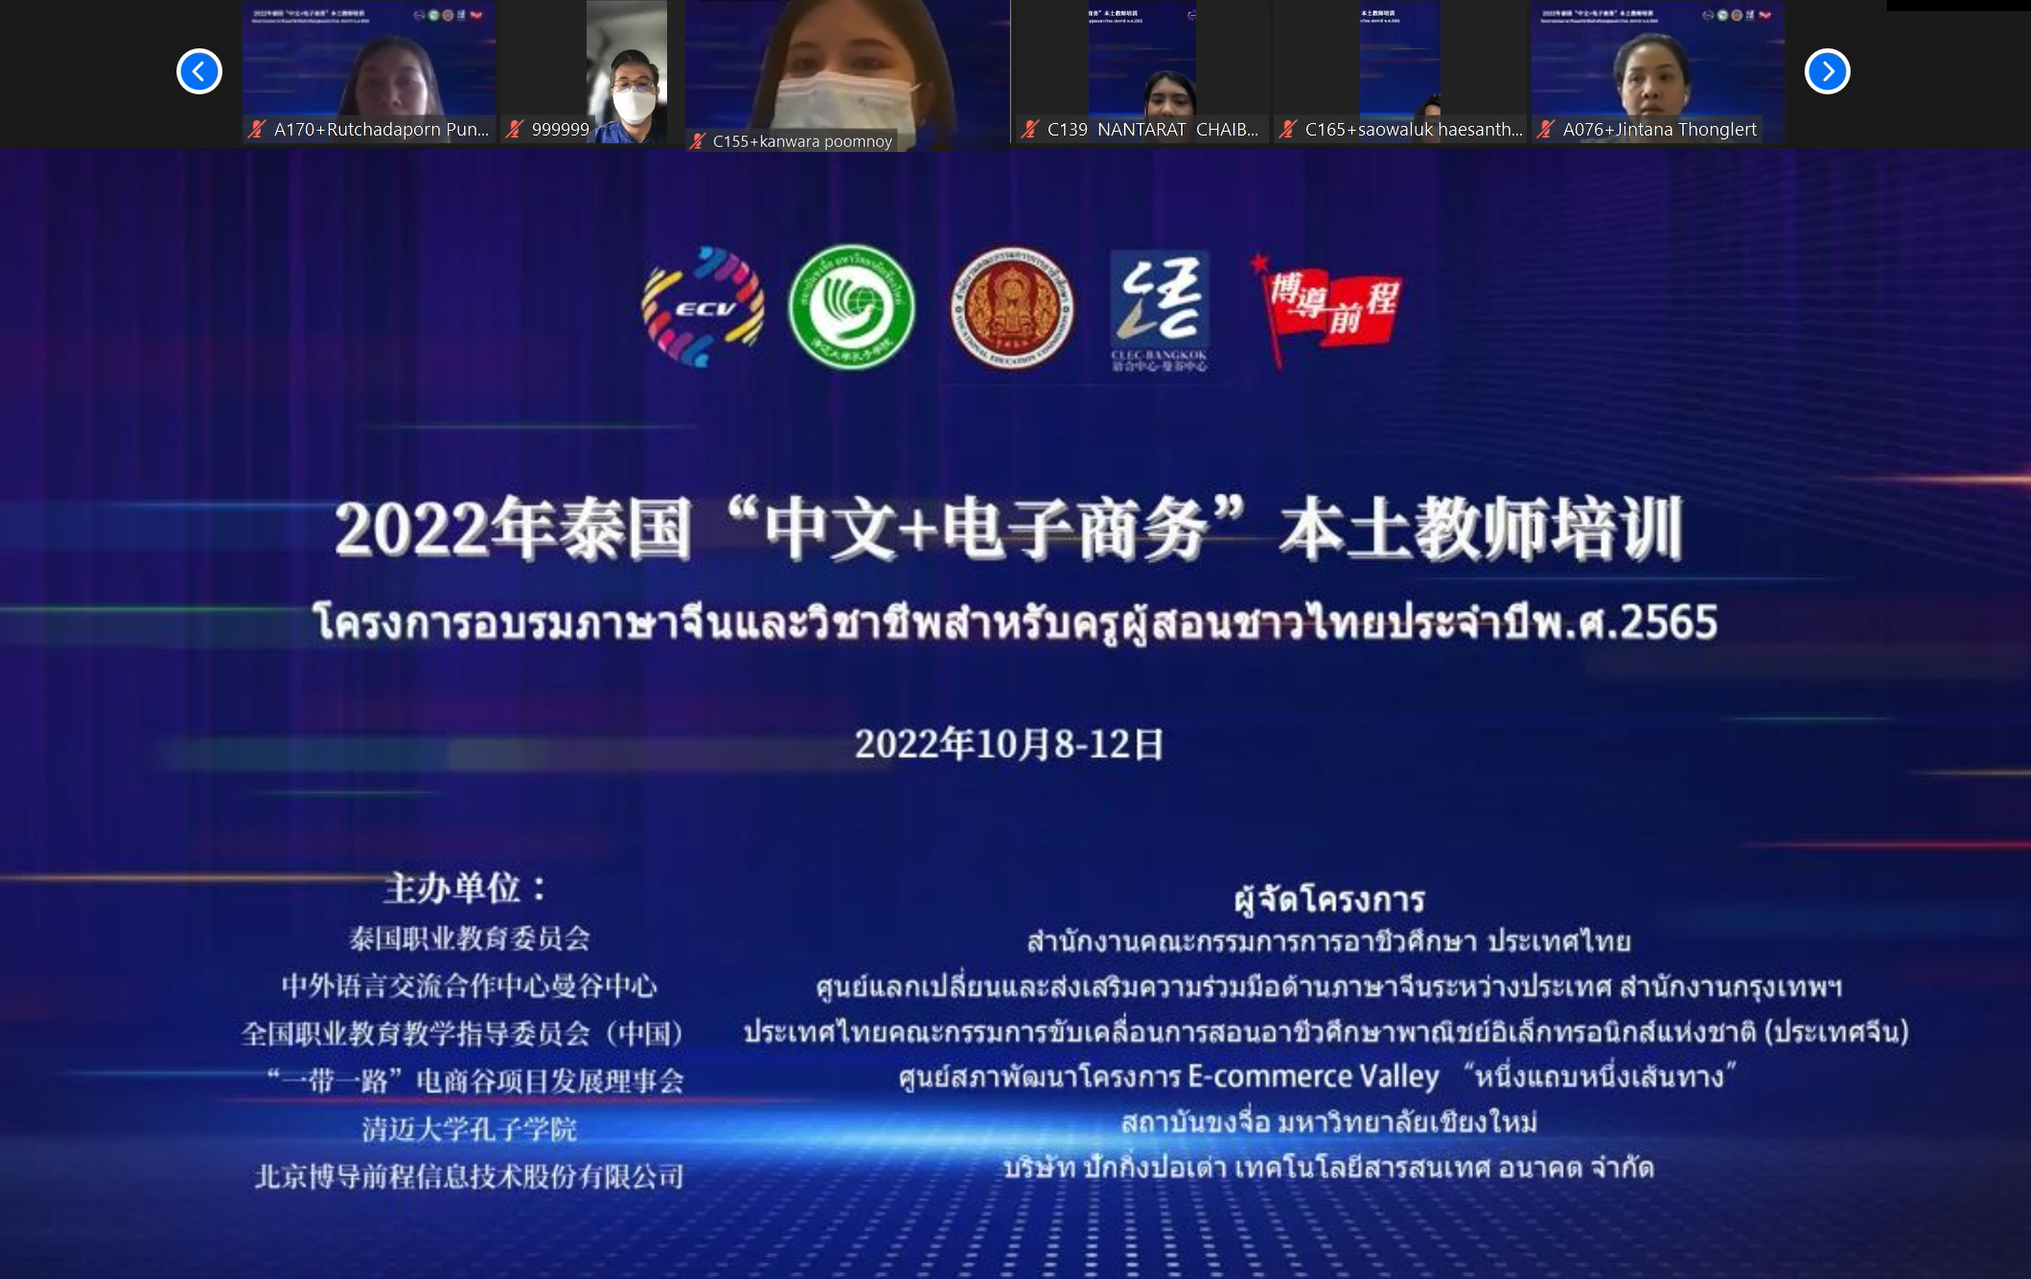 2022年泰国“中文+电子商务”本土教师培训顺利开班<